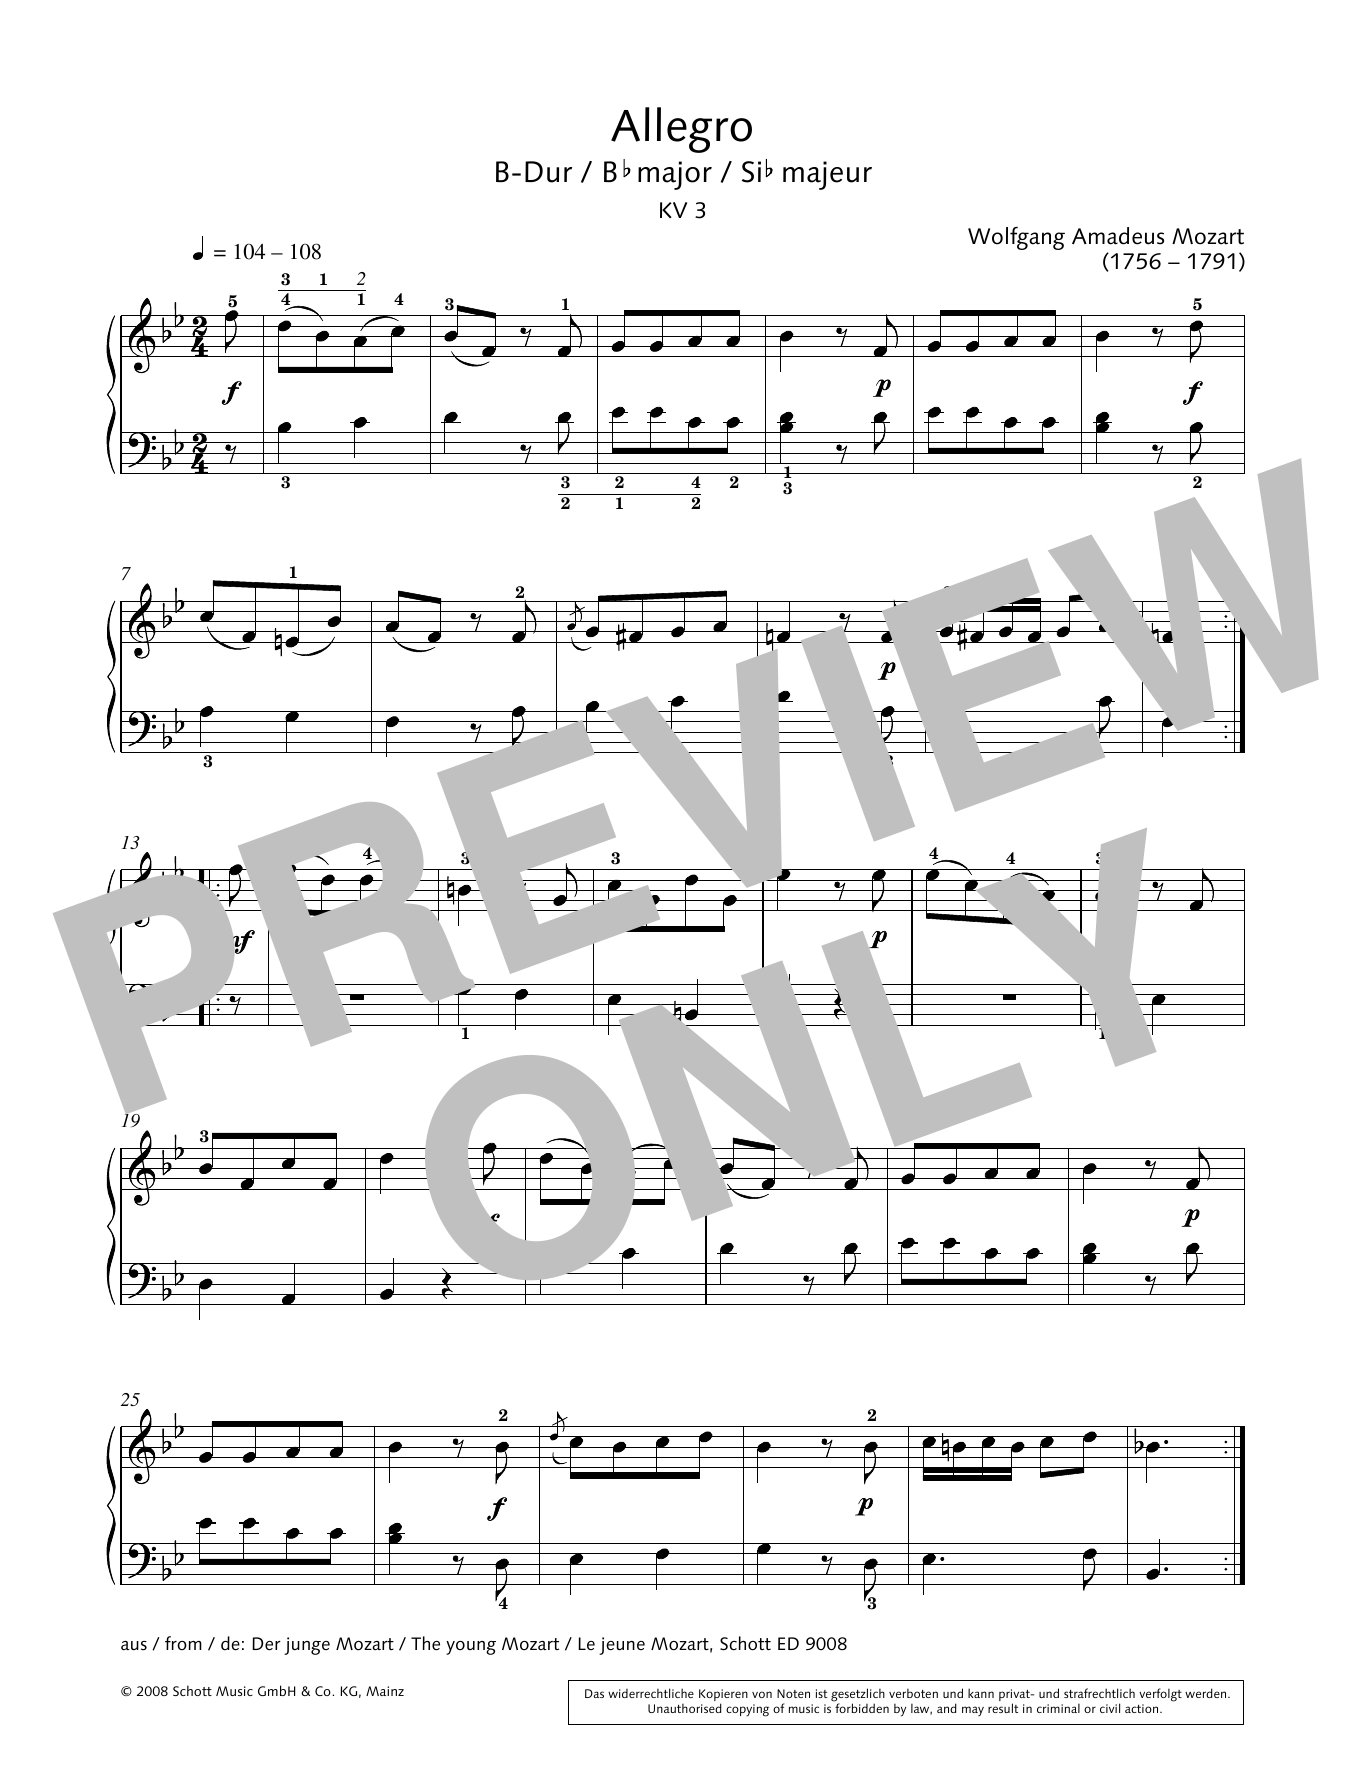 Download Wolfgang Amadeus Mozart Allegro in B-flat major Sheet Music